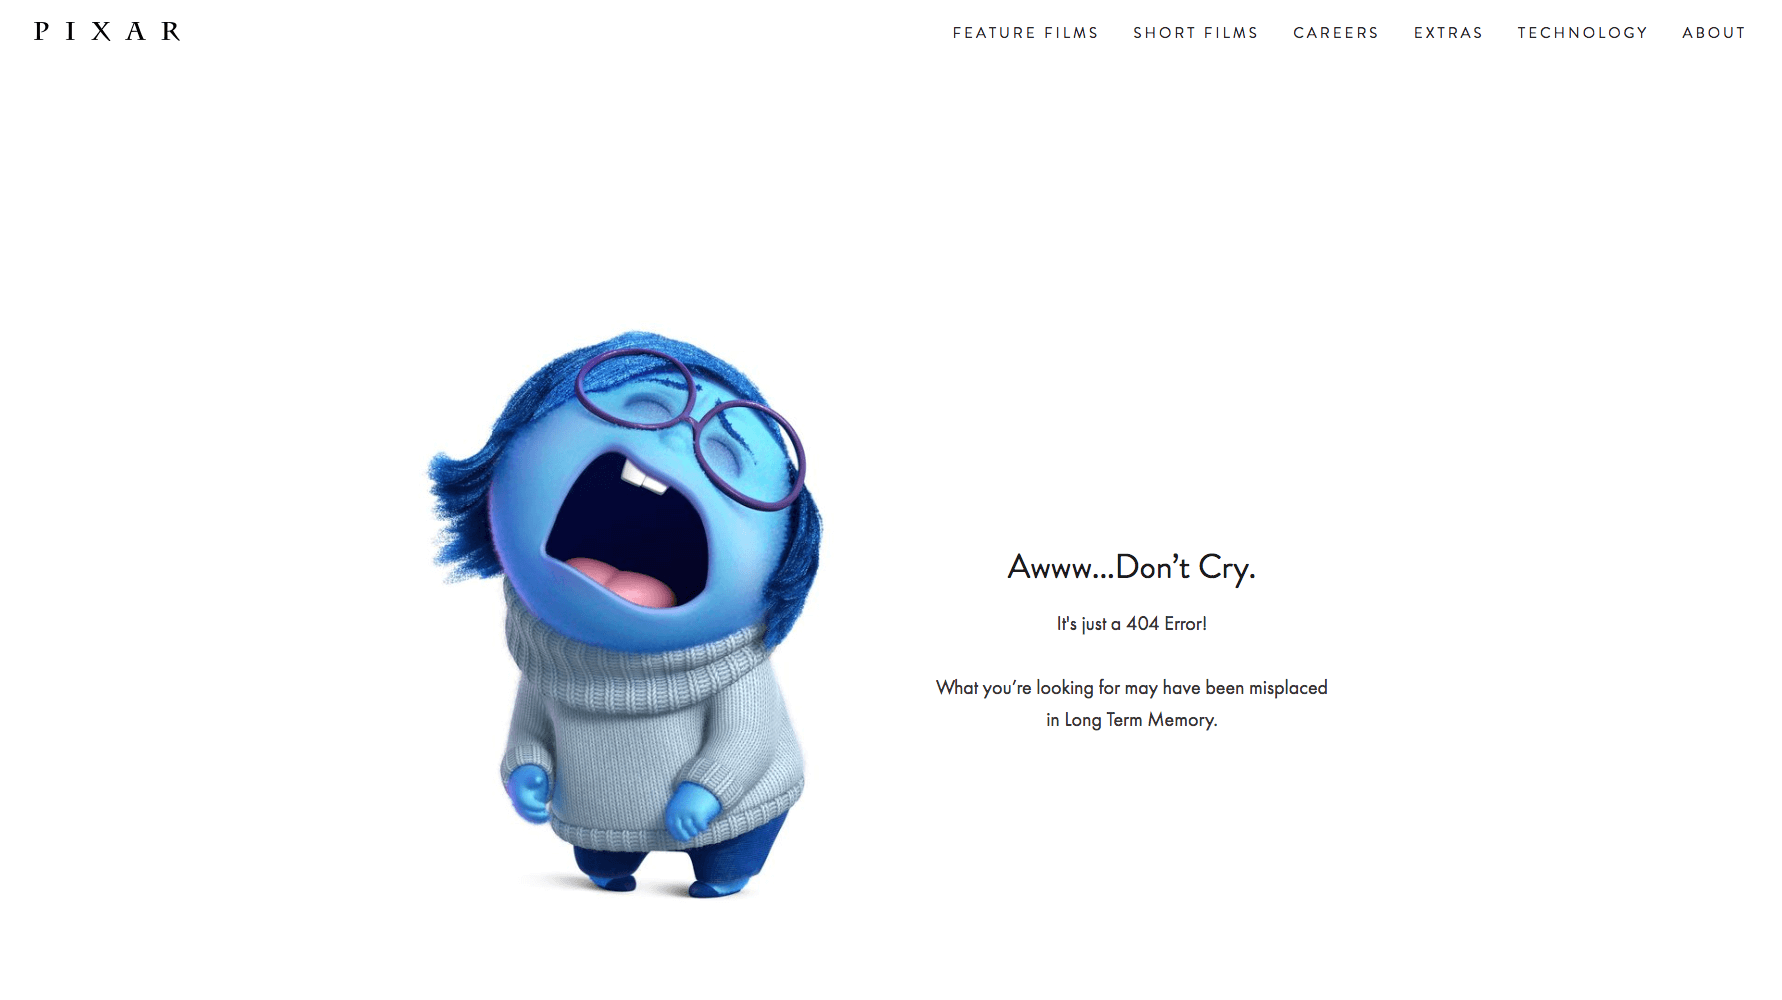 Ejemplo error 404 pixar.com 